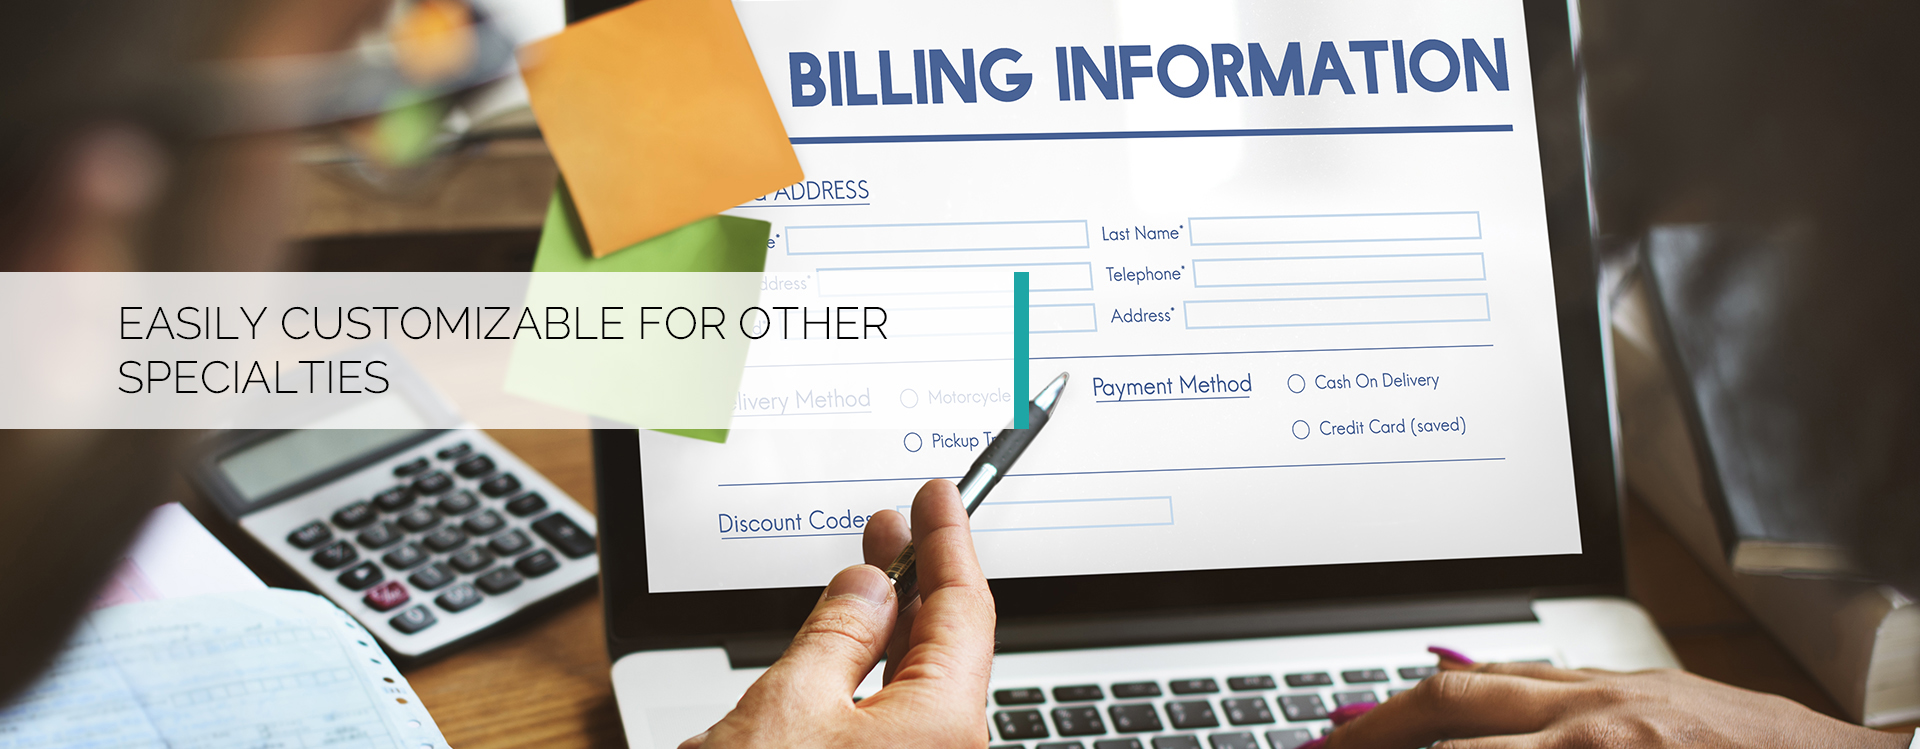 Invoice or billing information form